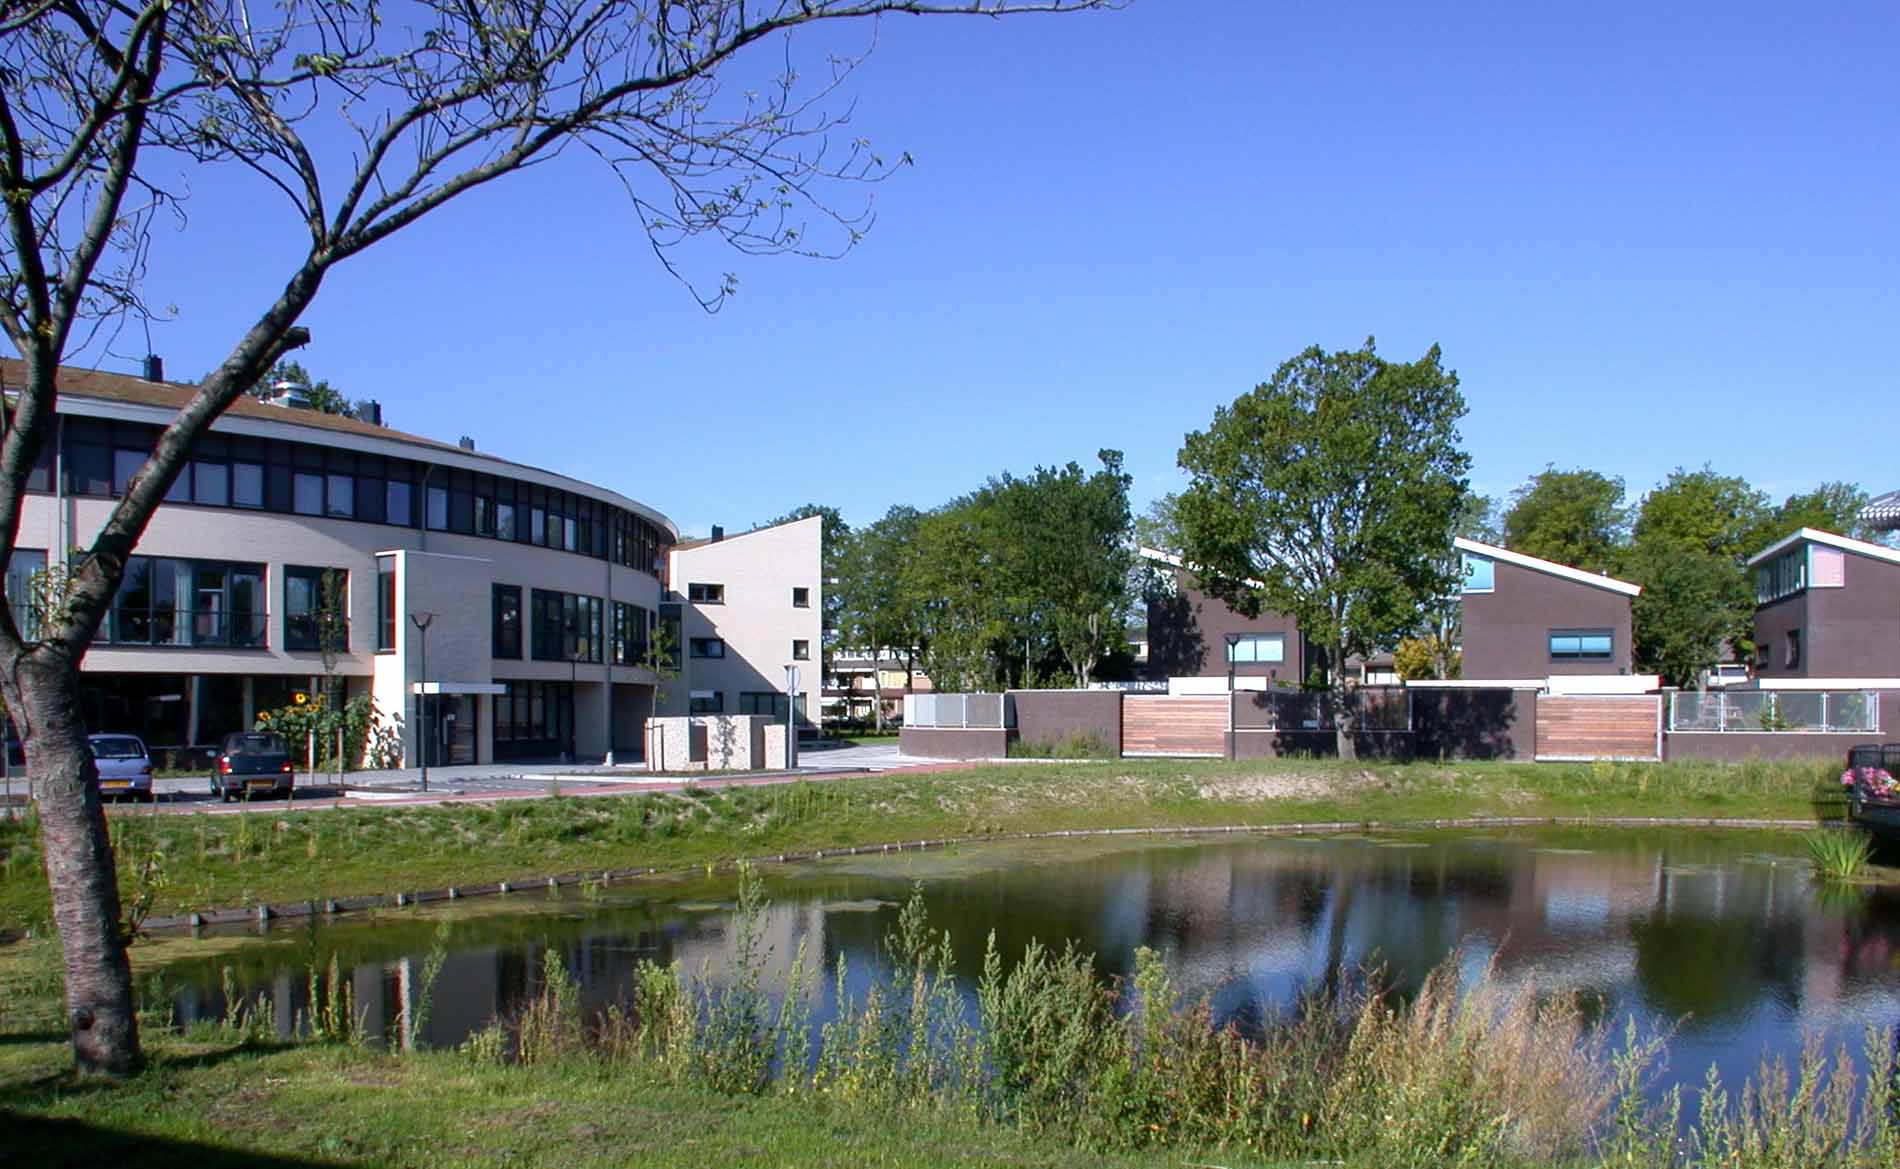 architect duurzaam bouwen woningen appartementen Sokkerwei Castricum BBHD architecten